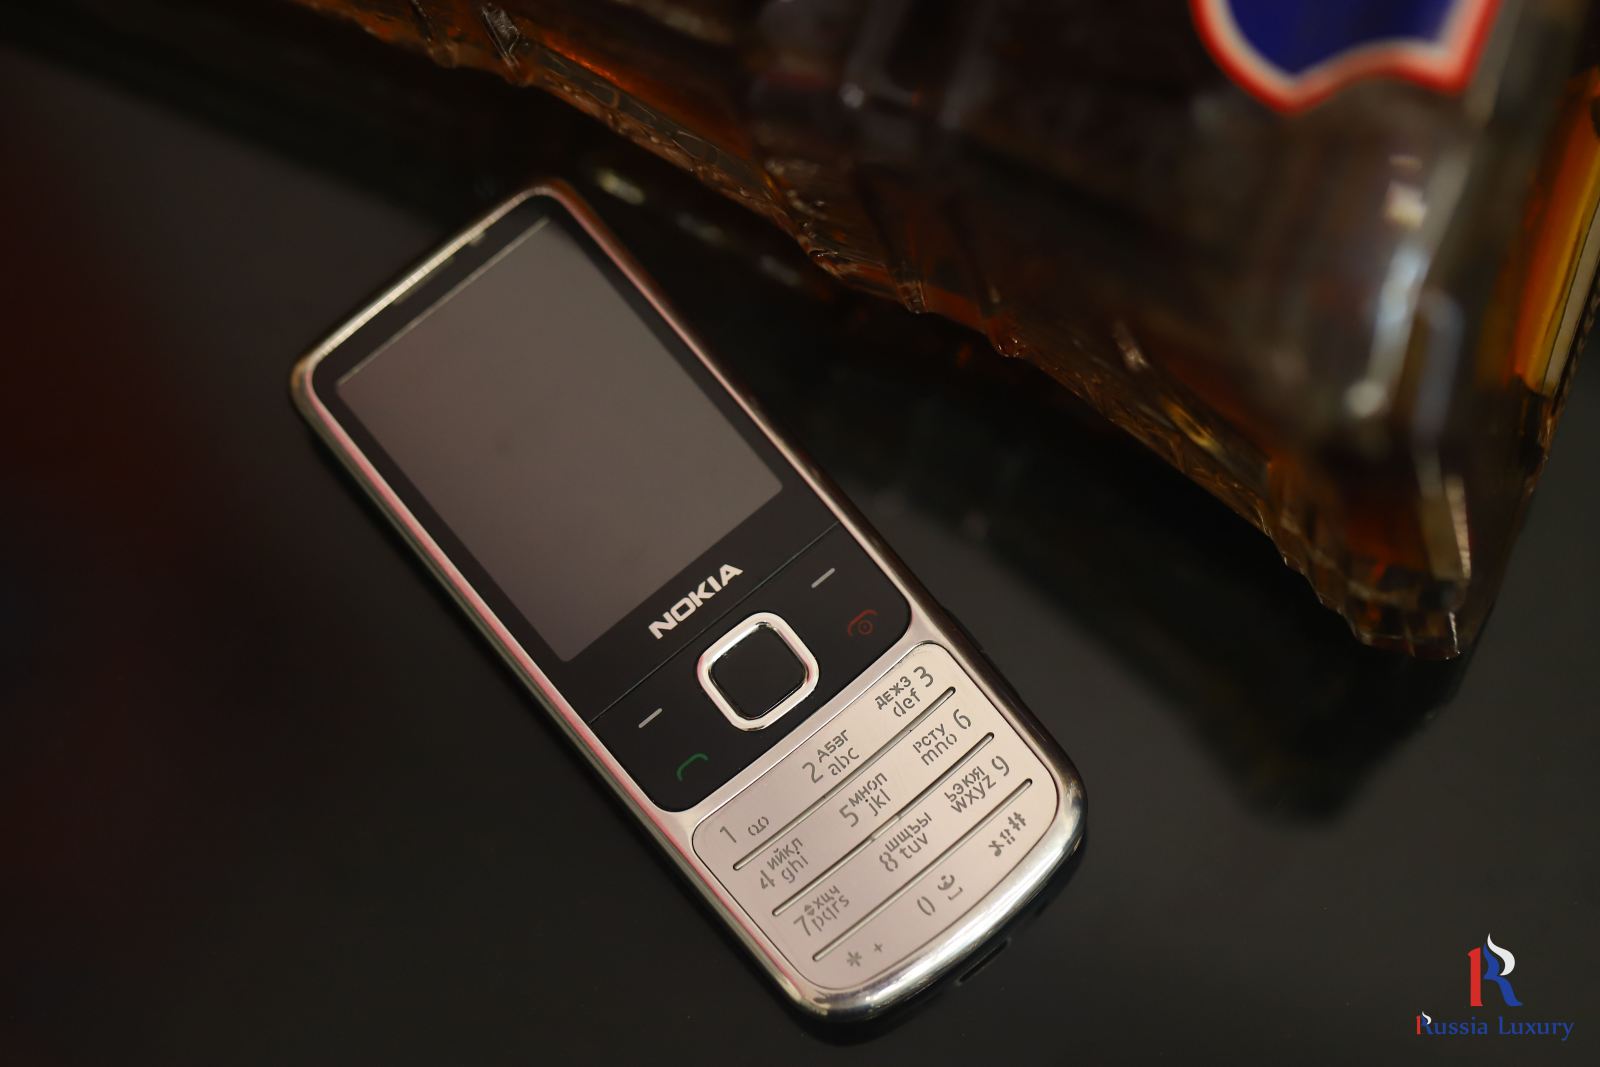 Nokia 6700 phiên bản Bạc